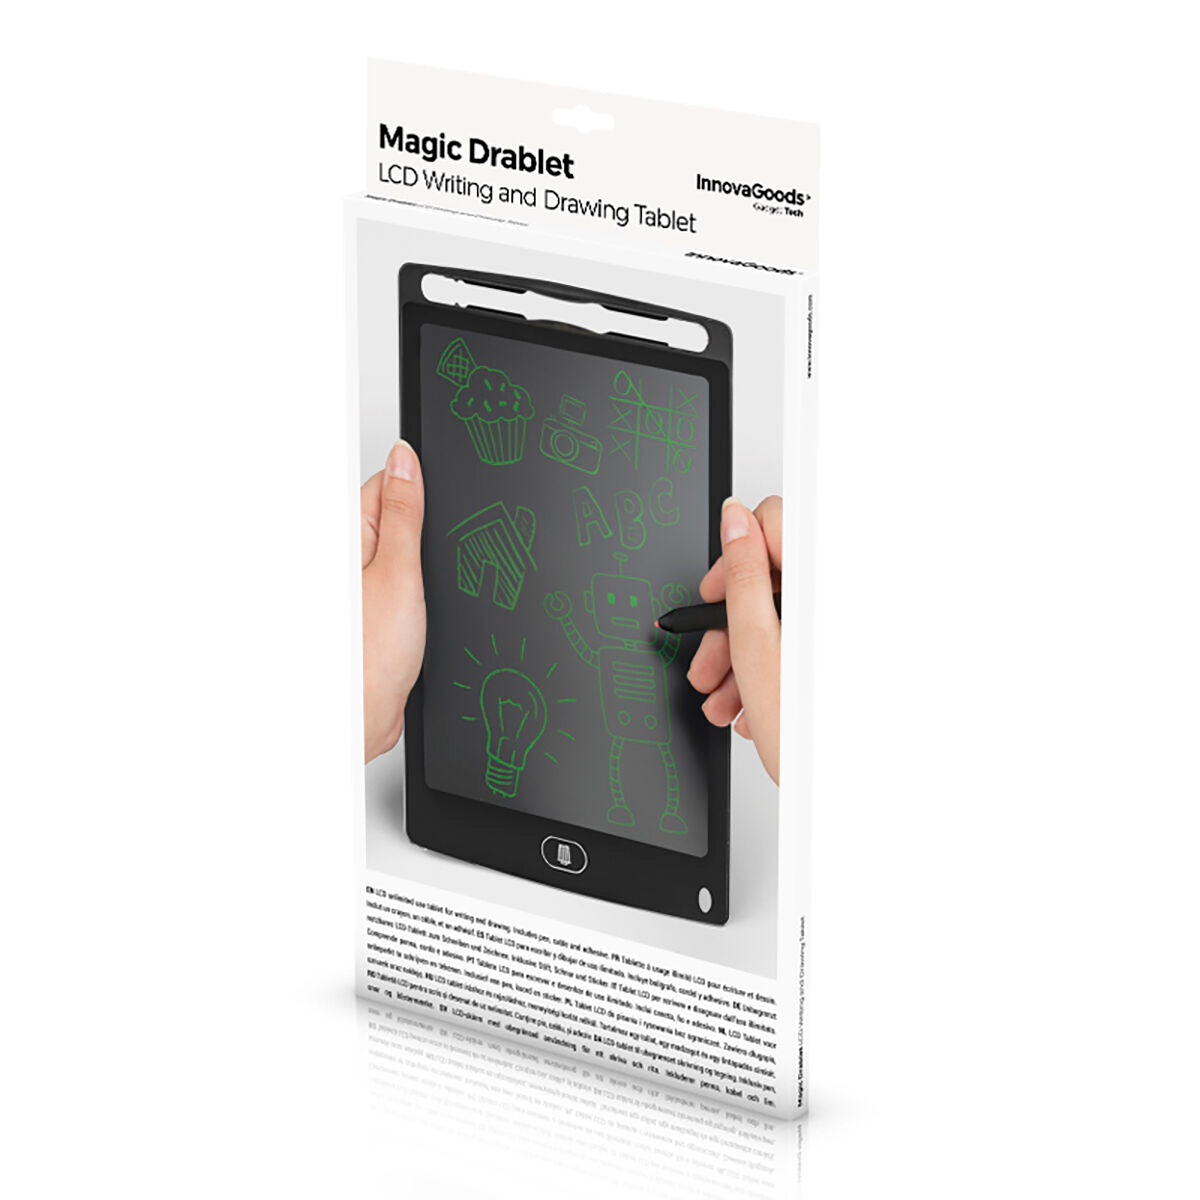 Kaufe LCD Schreib und Zeichentafel Magic Drablet InnovaGoods bei AWK Flagship um € 28.00